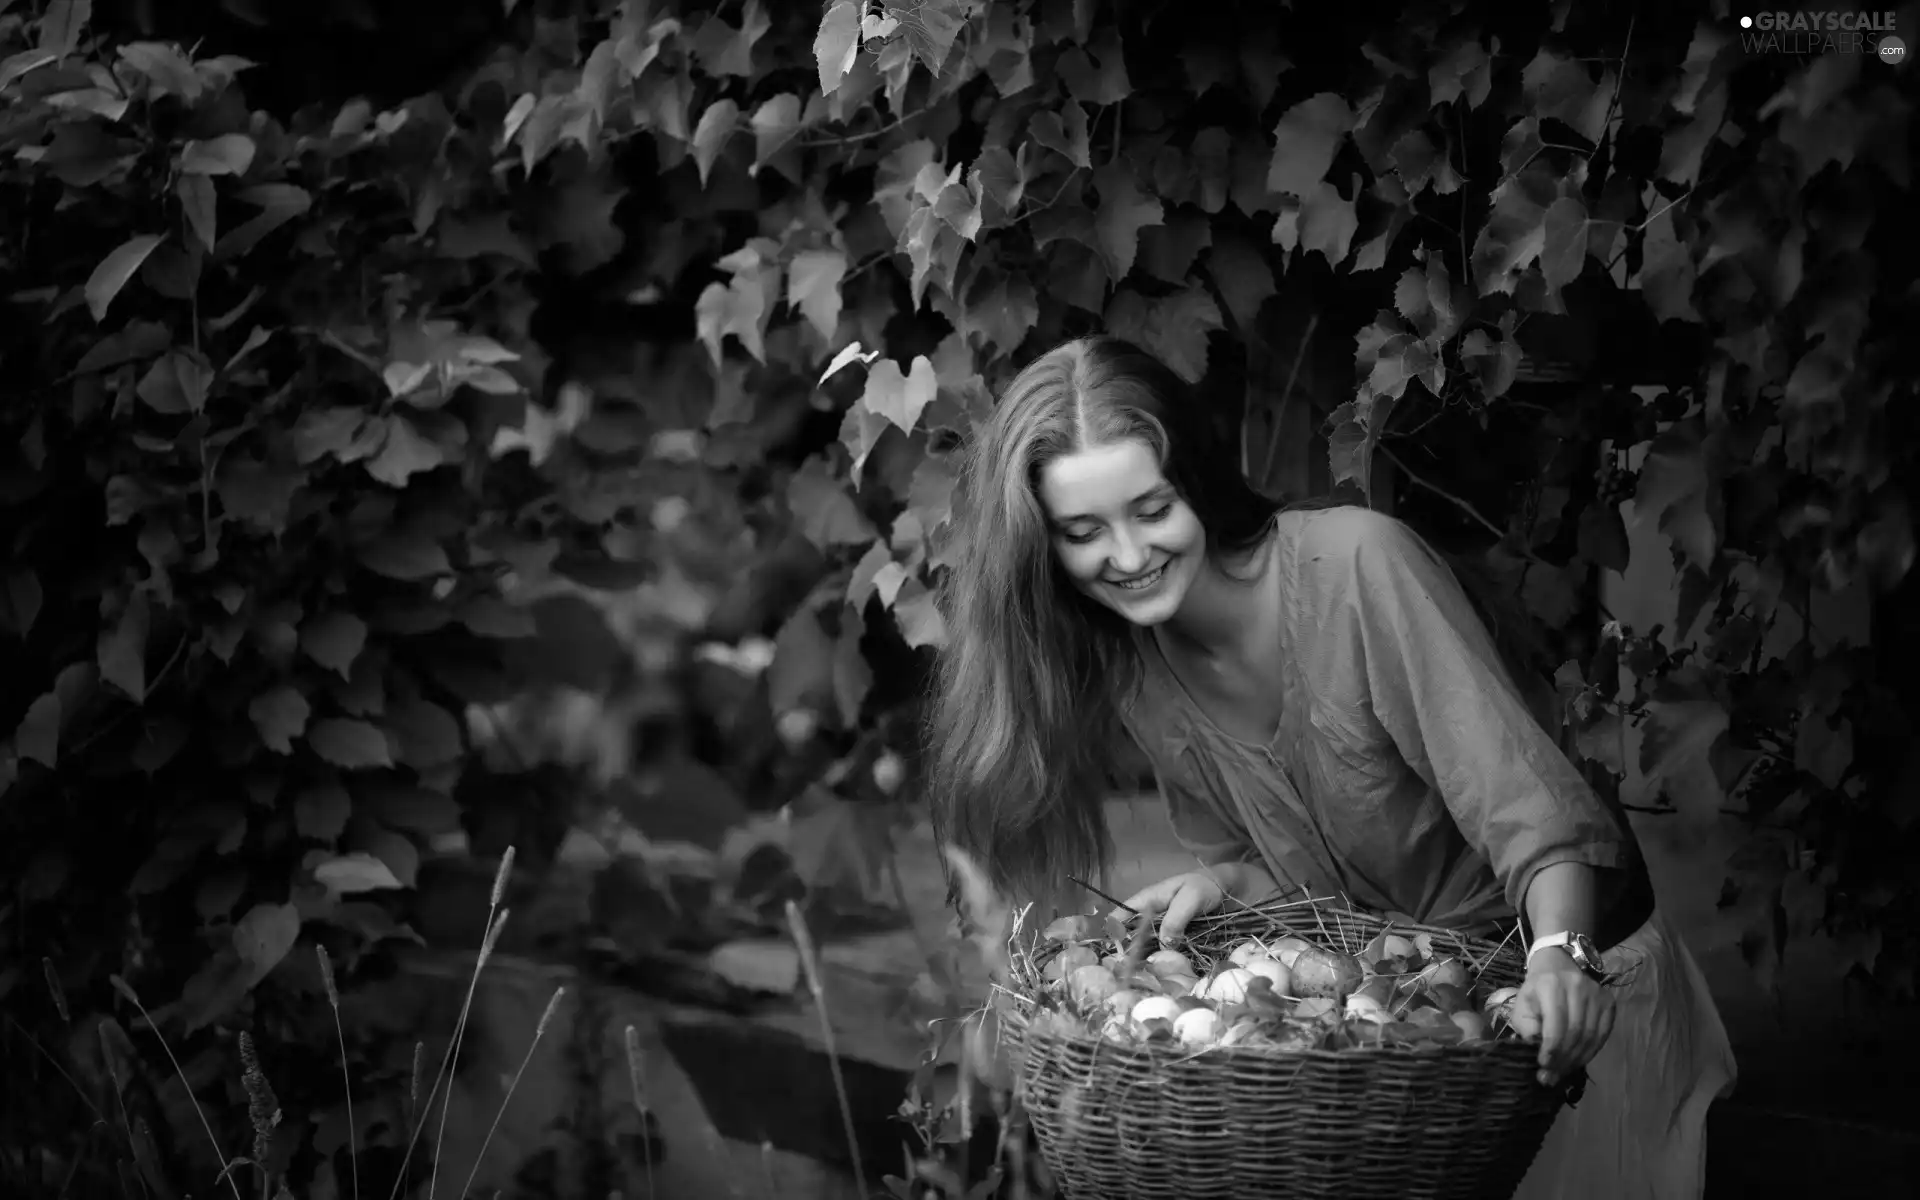 apples, harvest, orchard, basket, Women